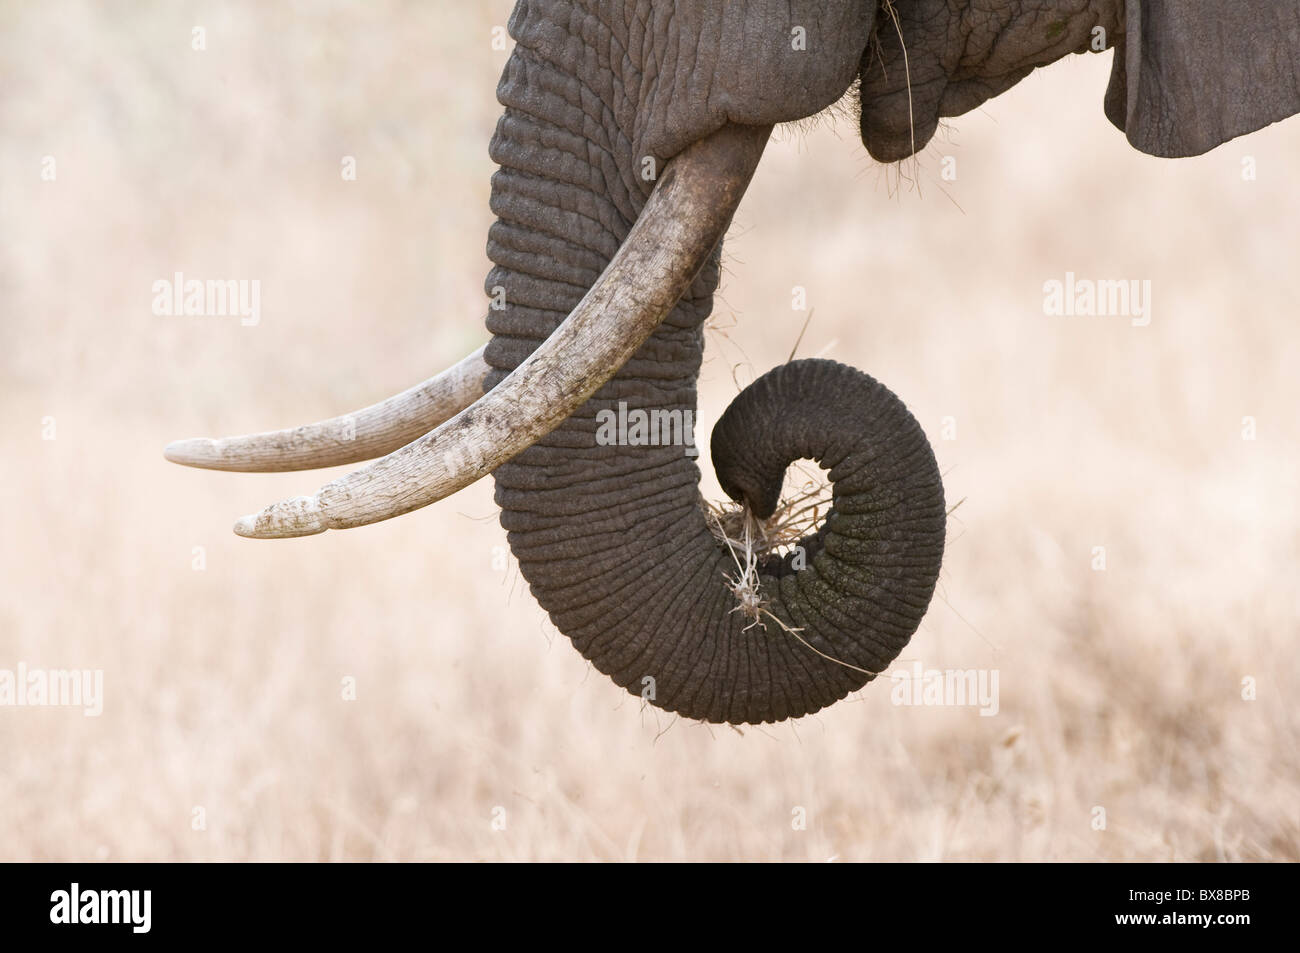 Elephant (Loxodonta africana) eating grass, close-up of trunk and tusk, Samburu National Reserve, Kenya Stock Photo